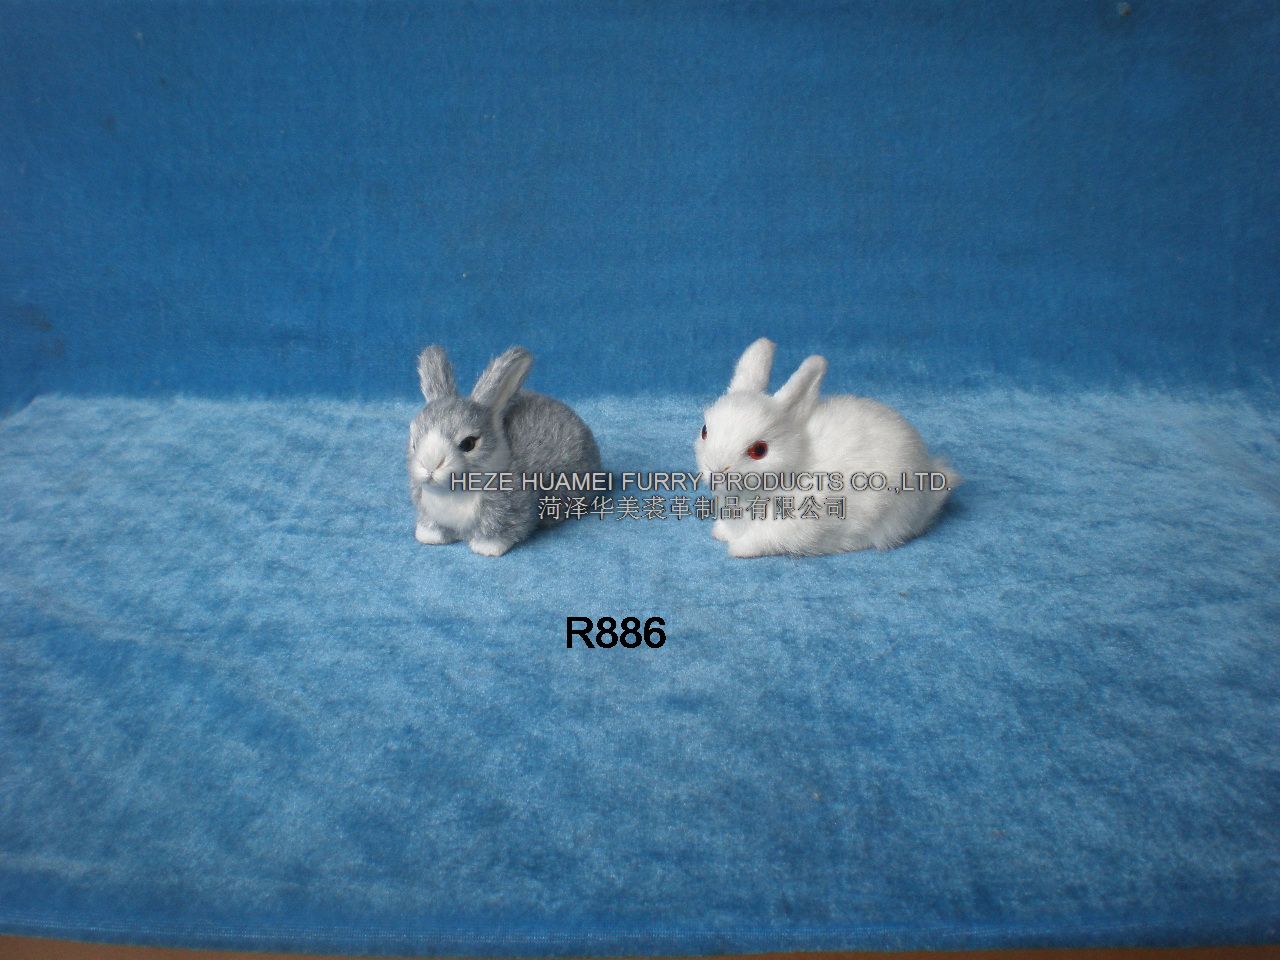 R886,菏泽宇航裘革制品有限公司专业仿真皮毛动物生产厂家